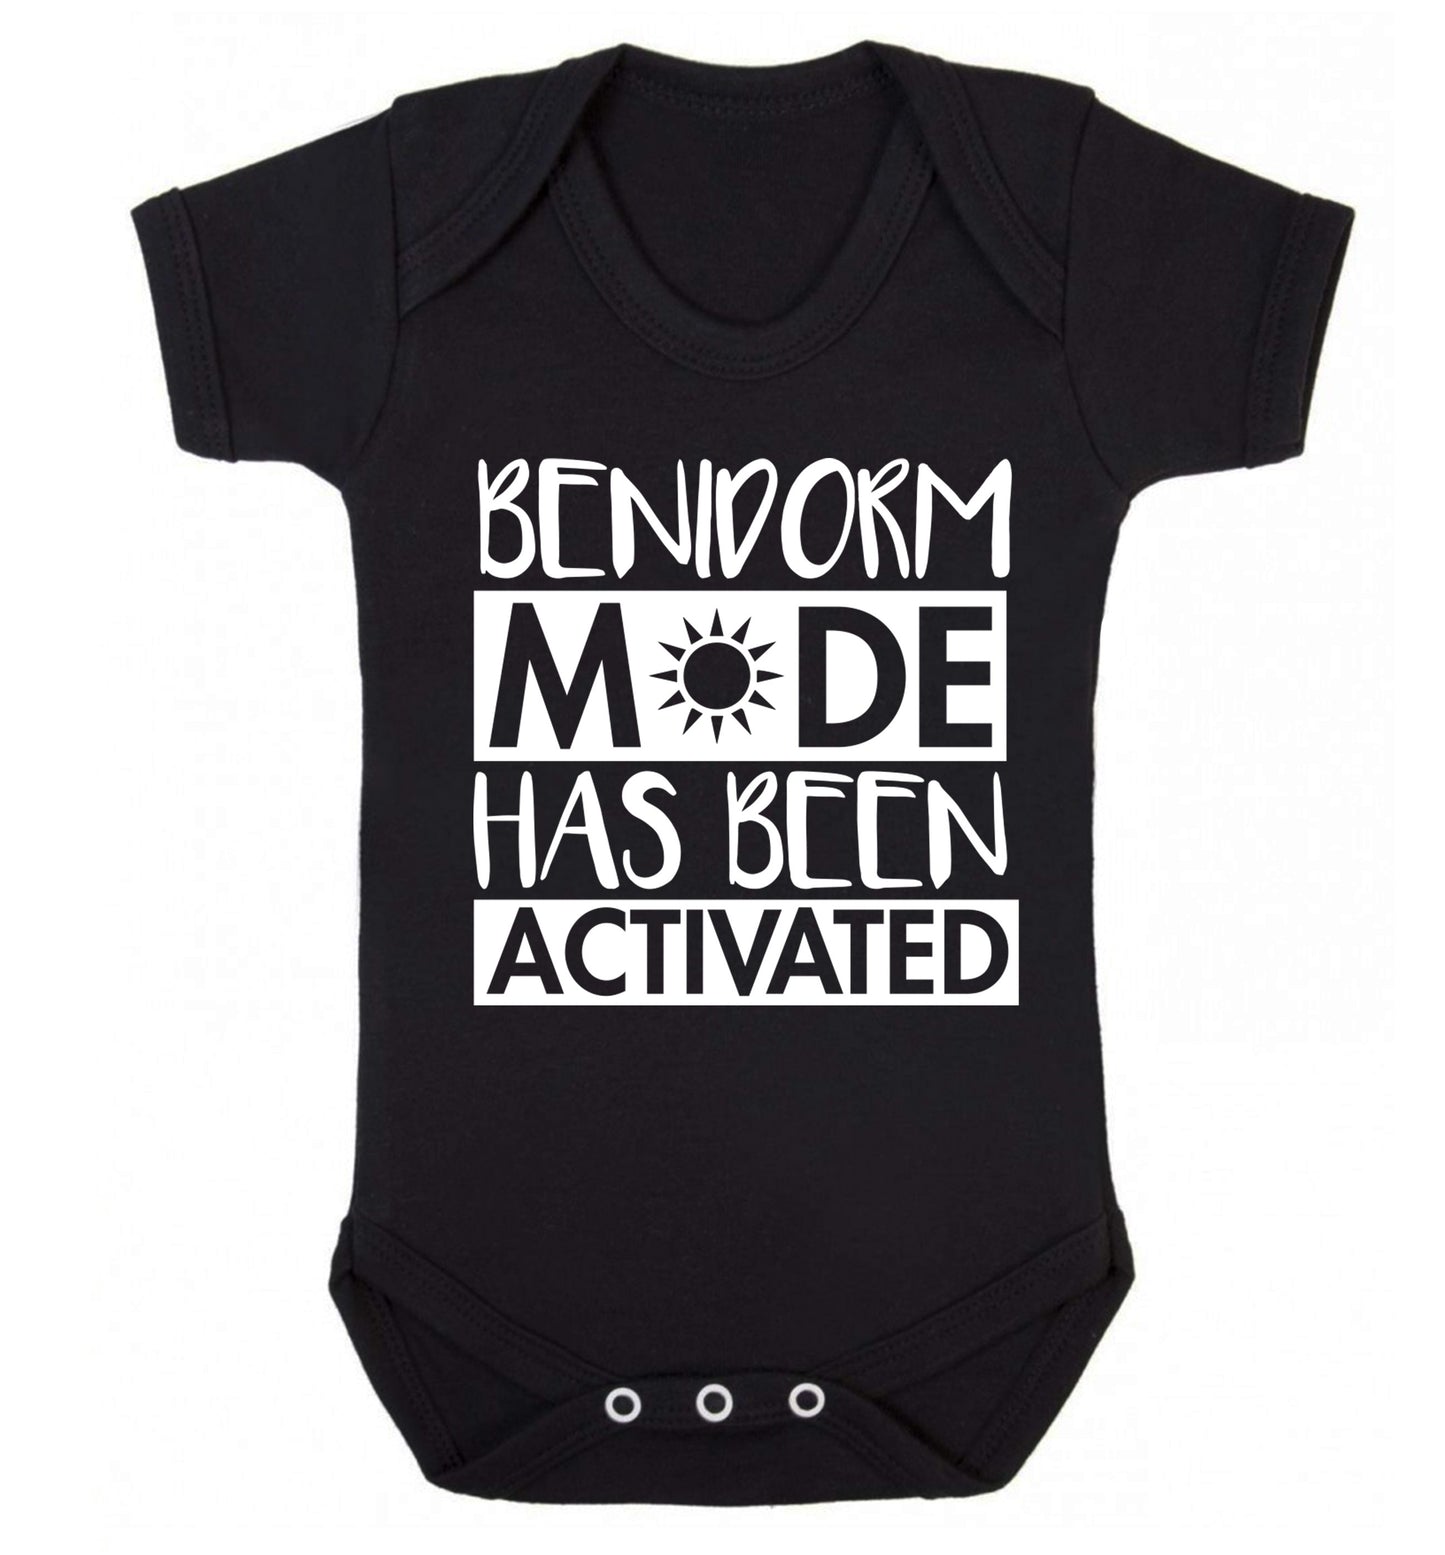 Benidorm mode has been activated Baby Vest black 18-24 months